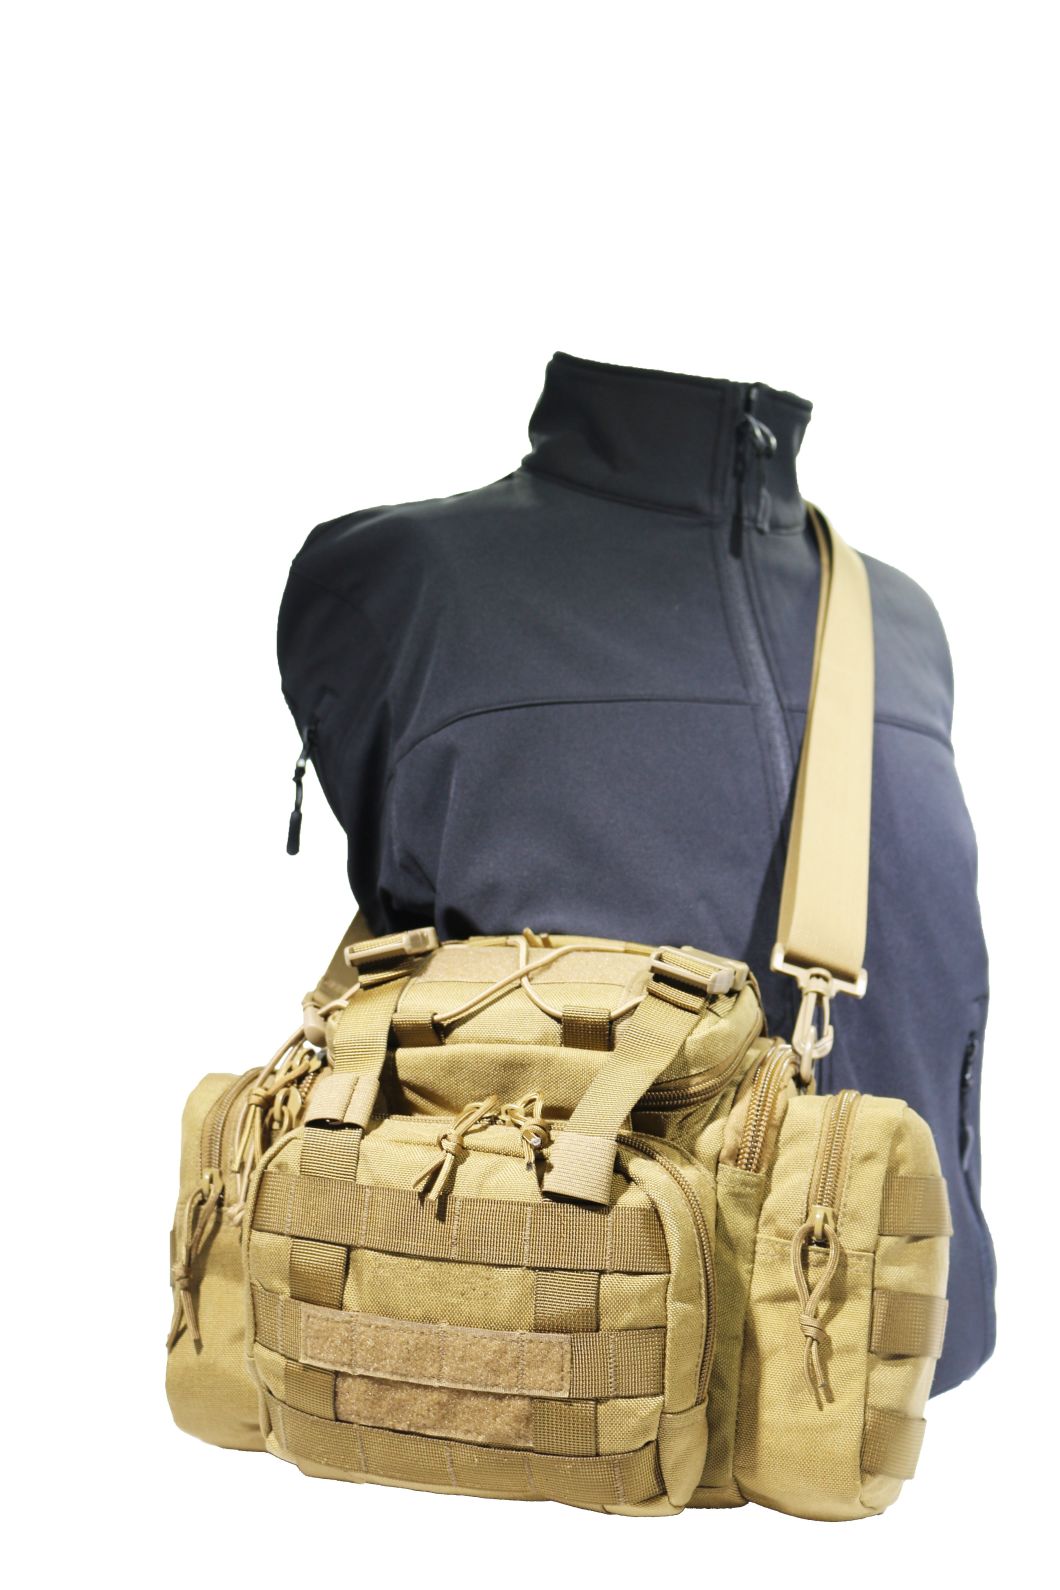 Tactical Shoulder Waist Bag Range Pack Sling Bag